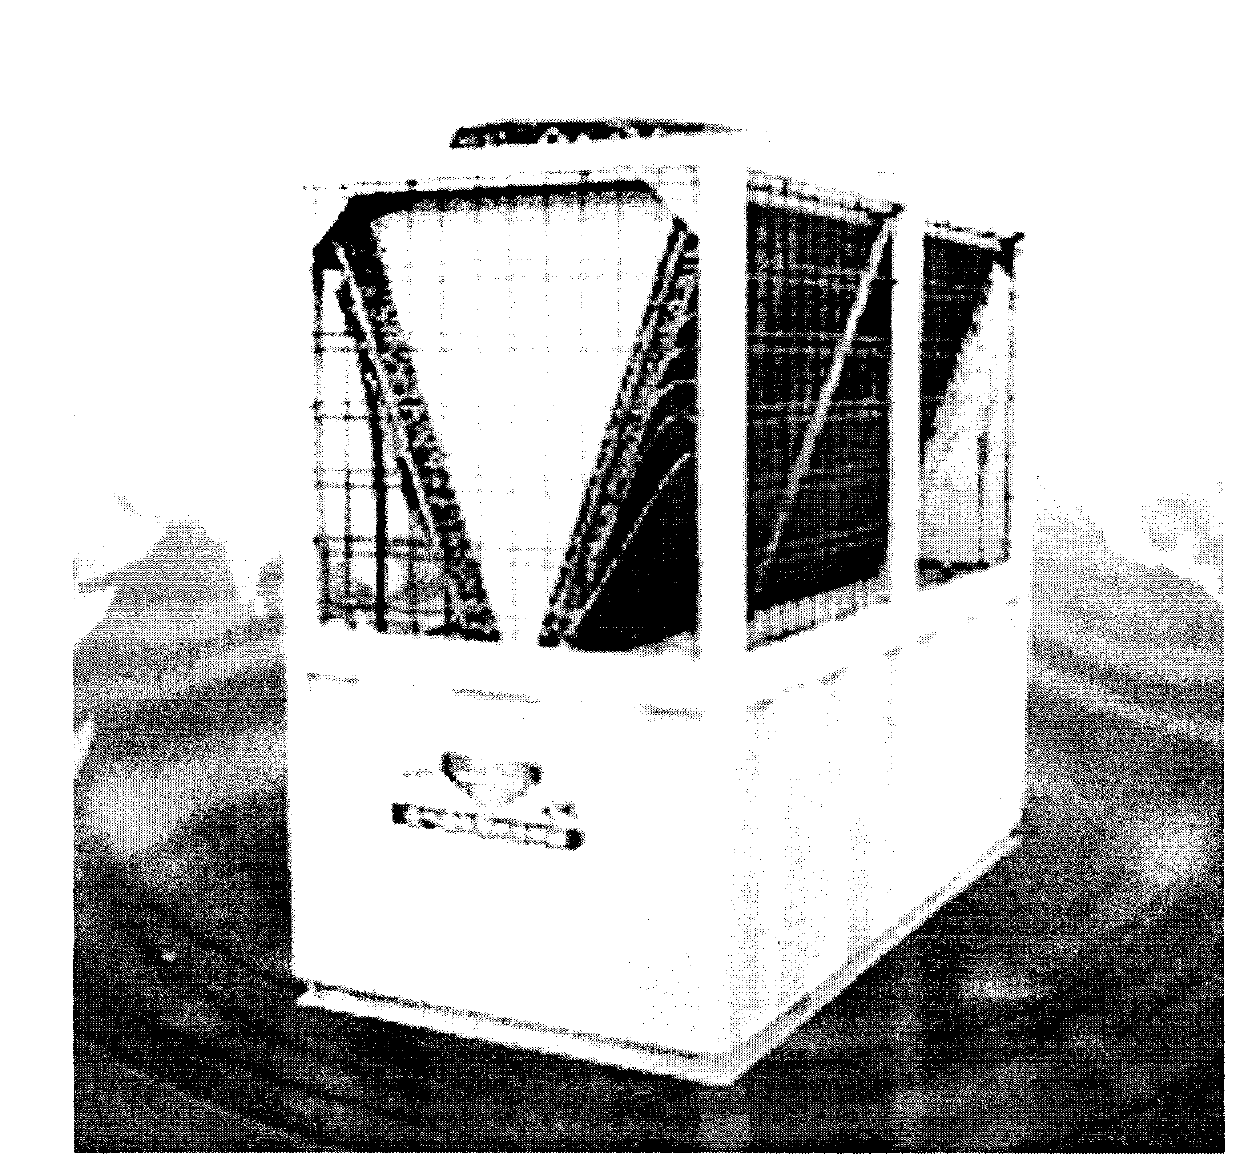 Henhouse farming technique using air source heat pumps